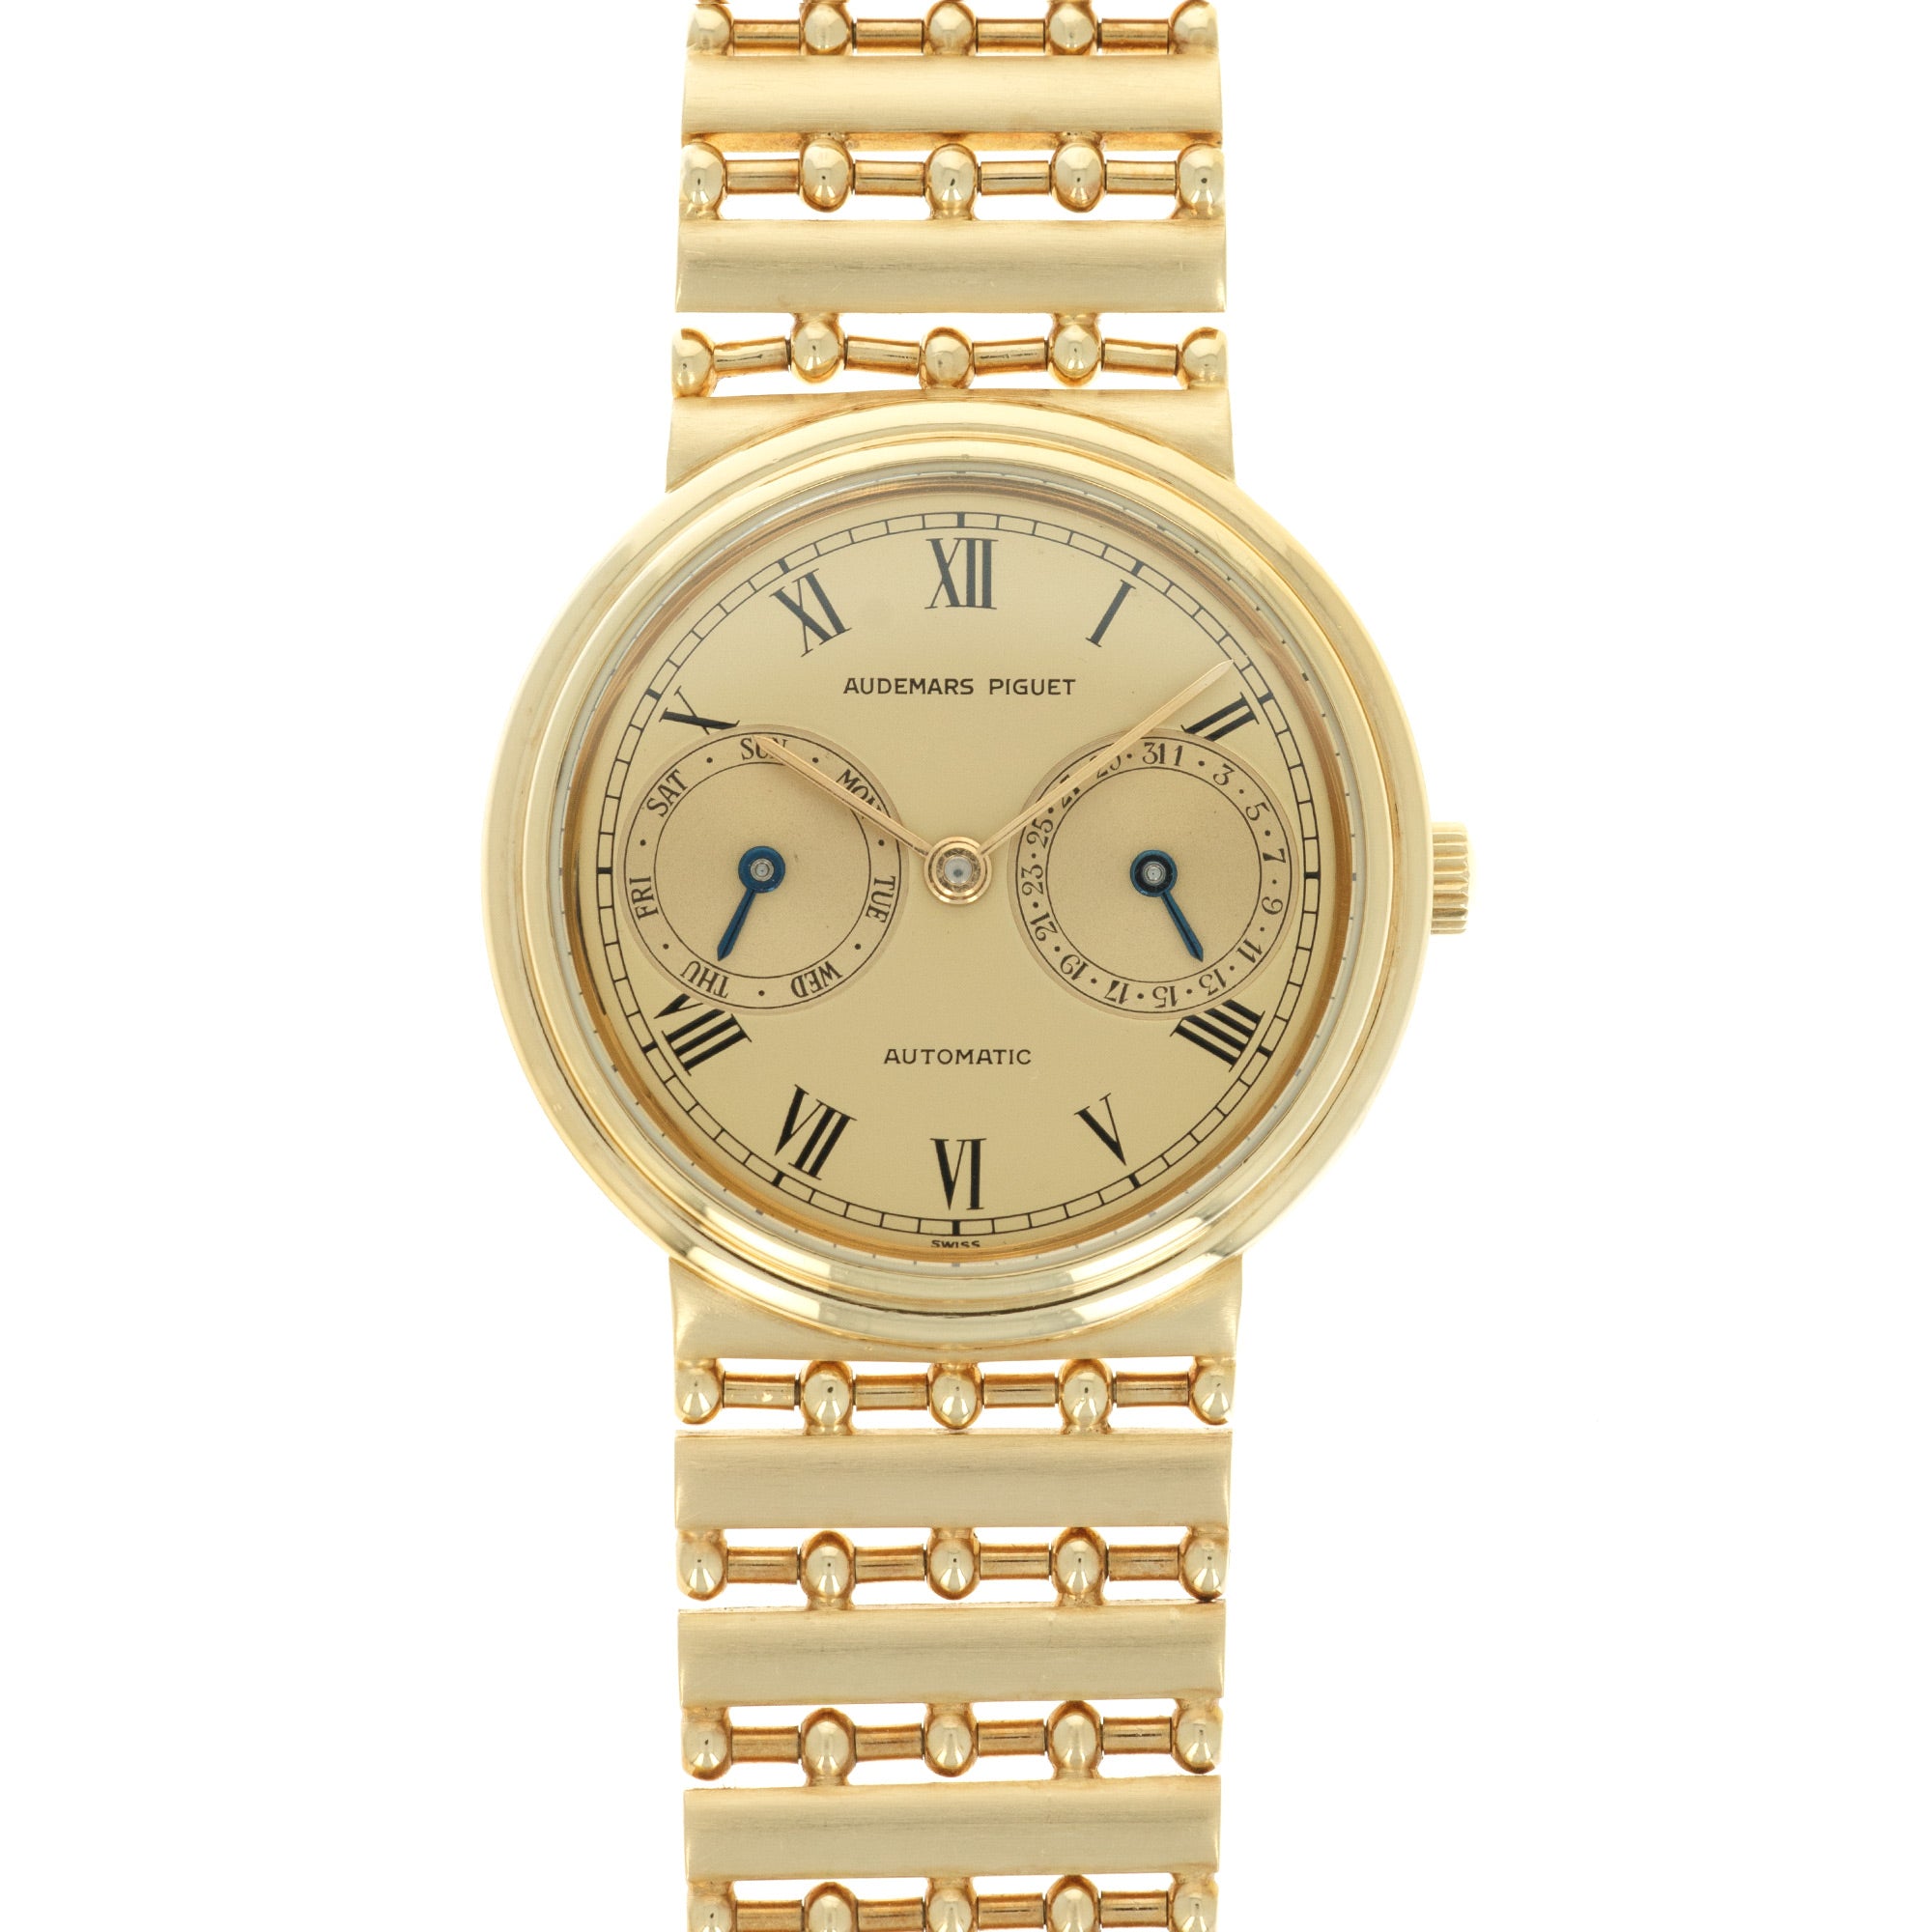 Audemars Piguet - Audemars Piguet Yellow Gold Day-Date Watch - The Keystone Watches